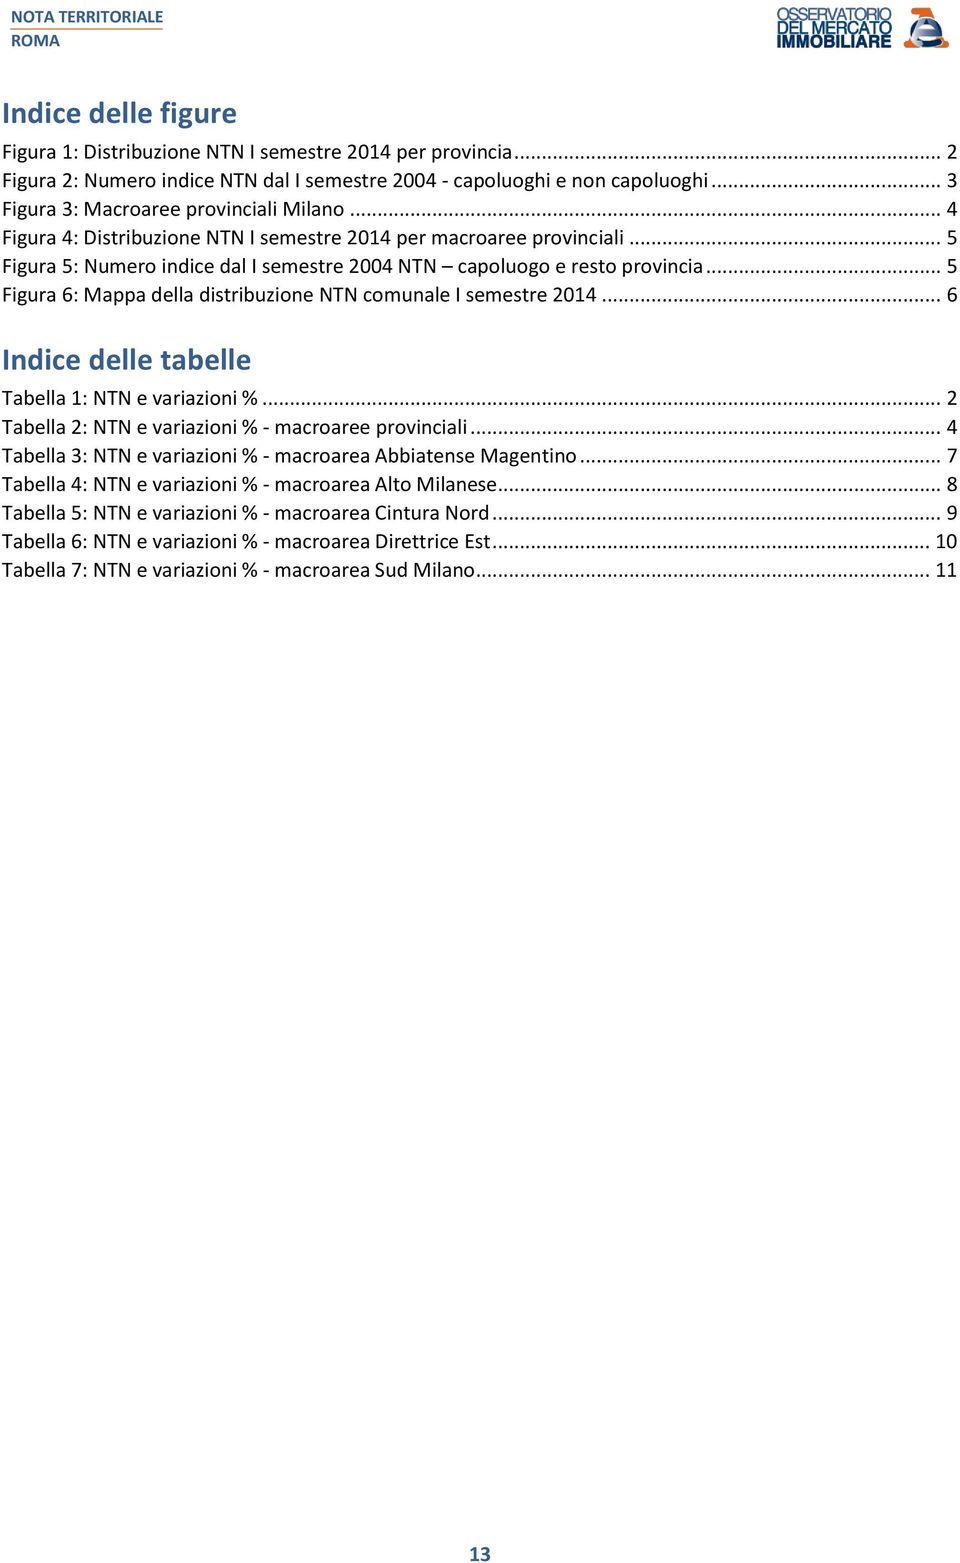 .. 5 Figura 6: Mappa della distribuzione NTN comunale I semestre 2014... 6 Indice delle tabelle Tabella 1: NTN e variazioni %... 2 Tabella 2: NTN e variazioni % - macroaree provinciali.